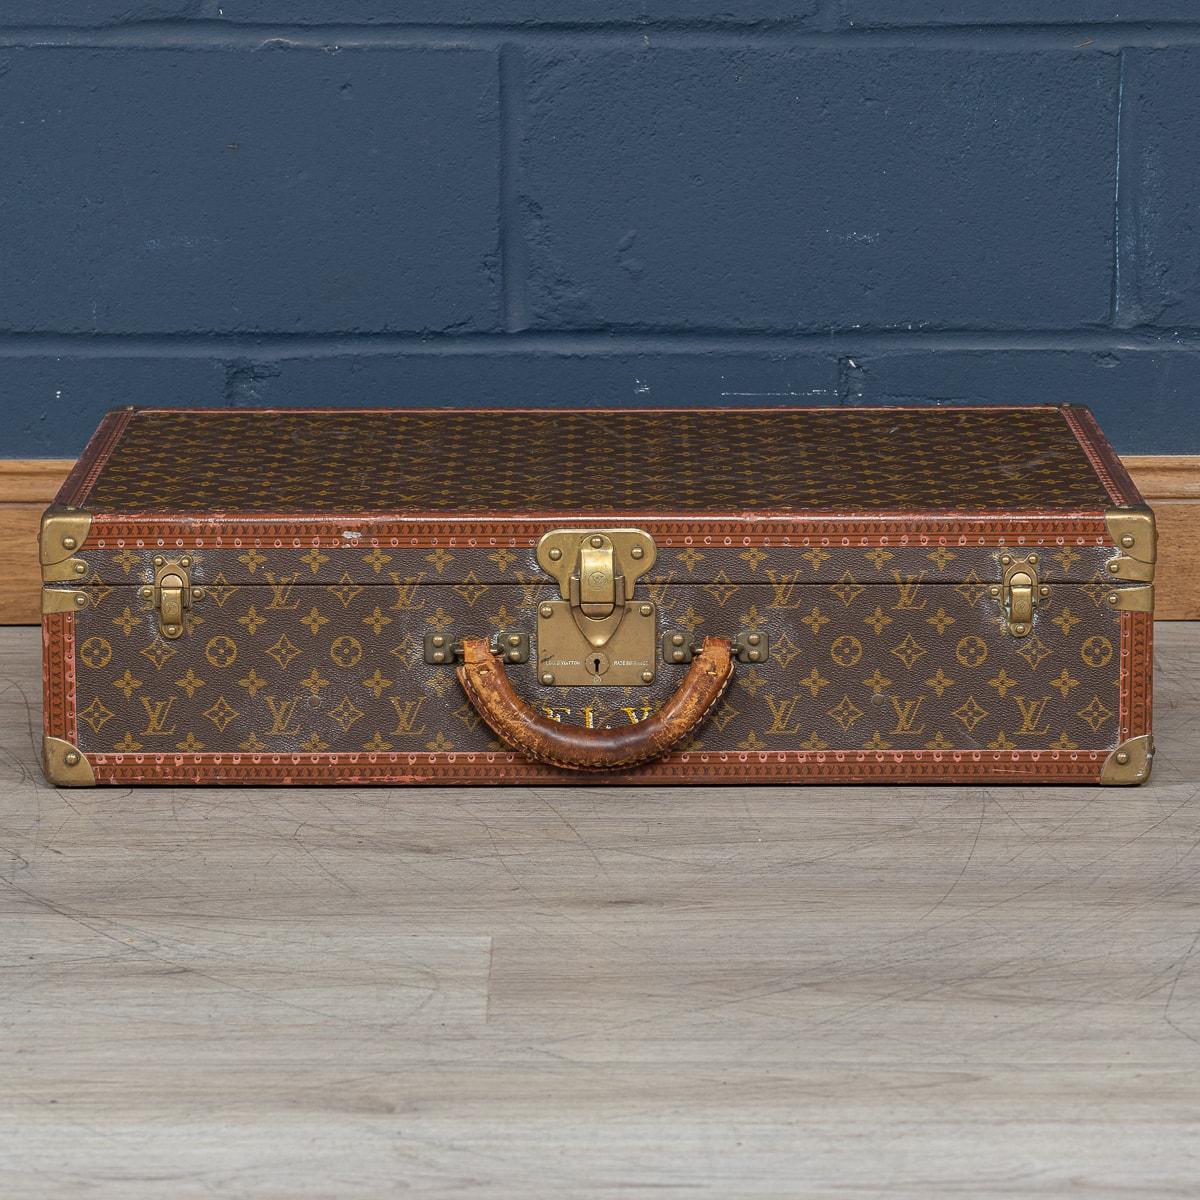 Ravissante valise rigide Louis Vuitton du milieu à la fin du XXe siècle, recouverte de la toile du monogramme emblématique et complétée par des ferrures en laiton. L'extérieur dégage le style inimitable qui est devenu synonyme de la célèbre maison